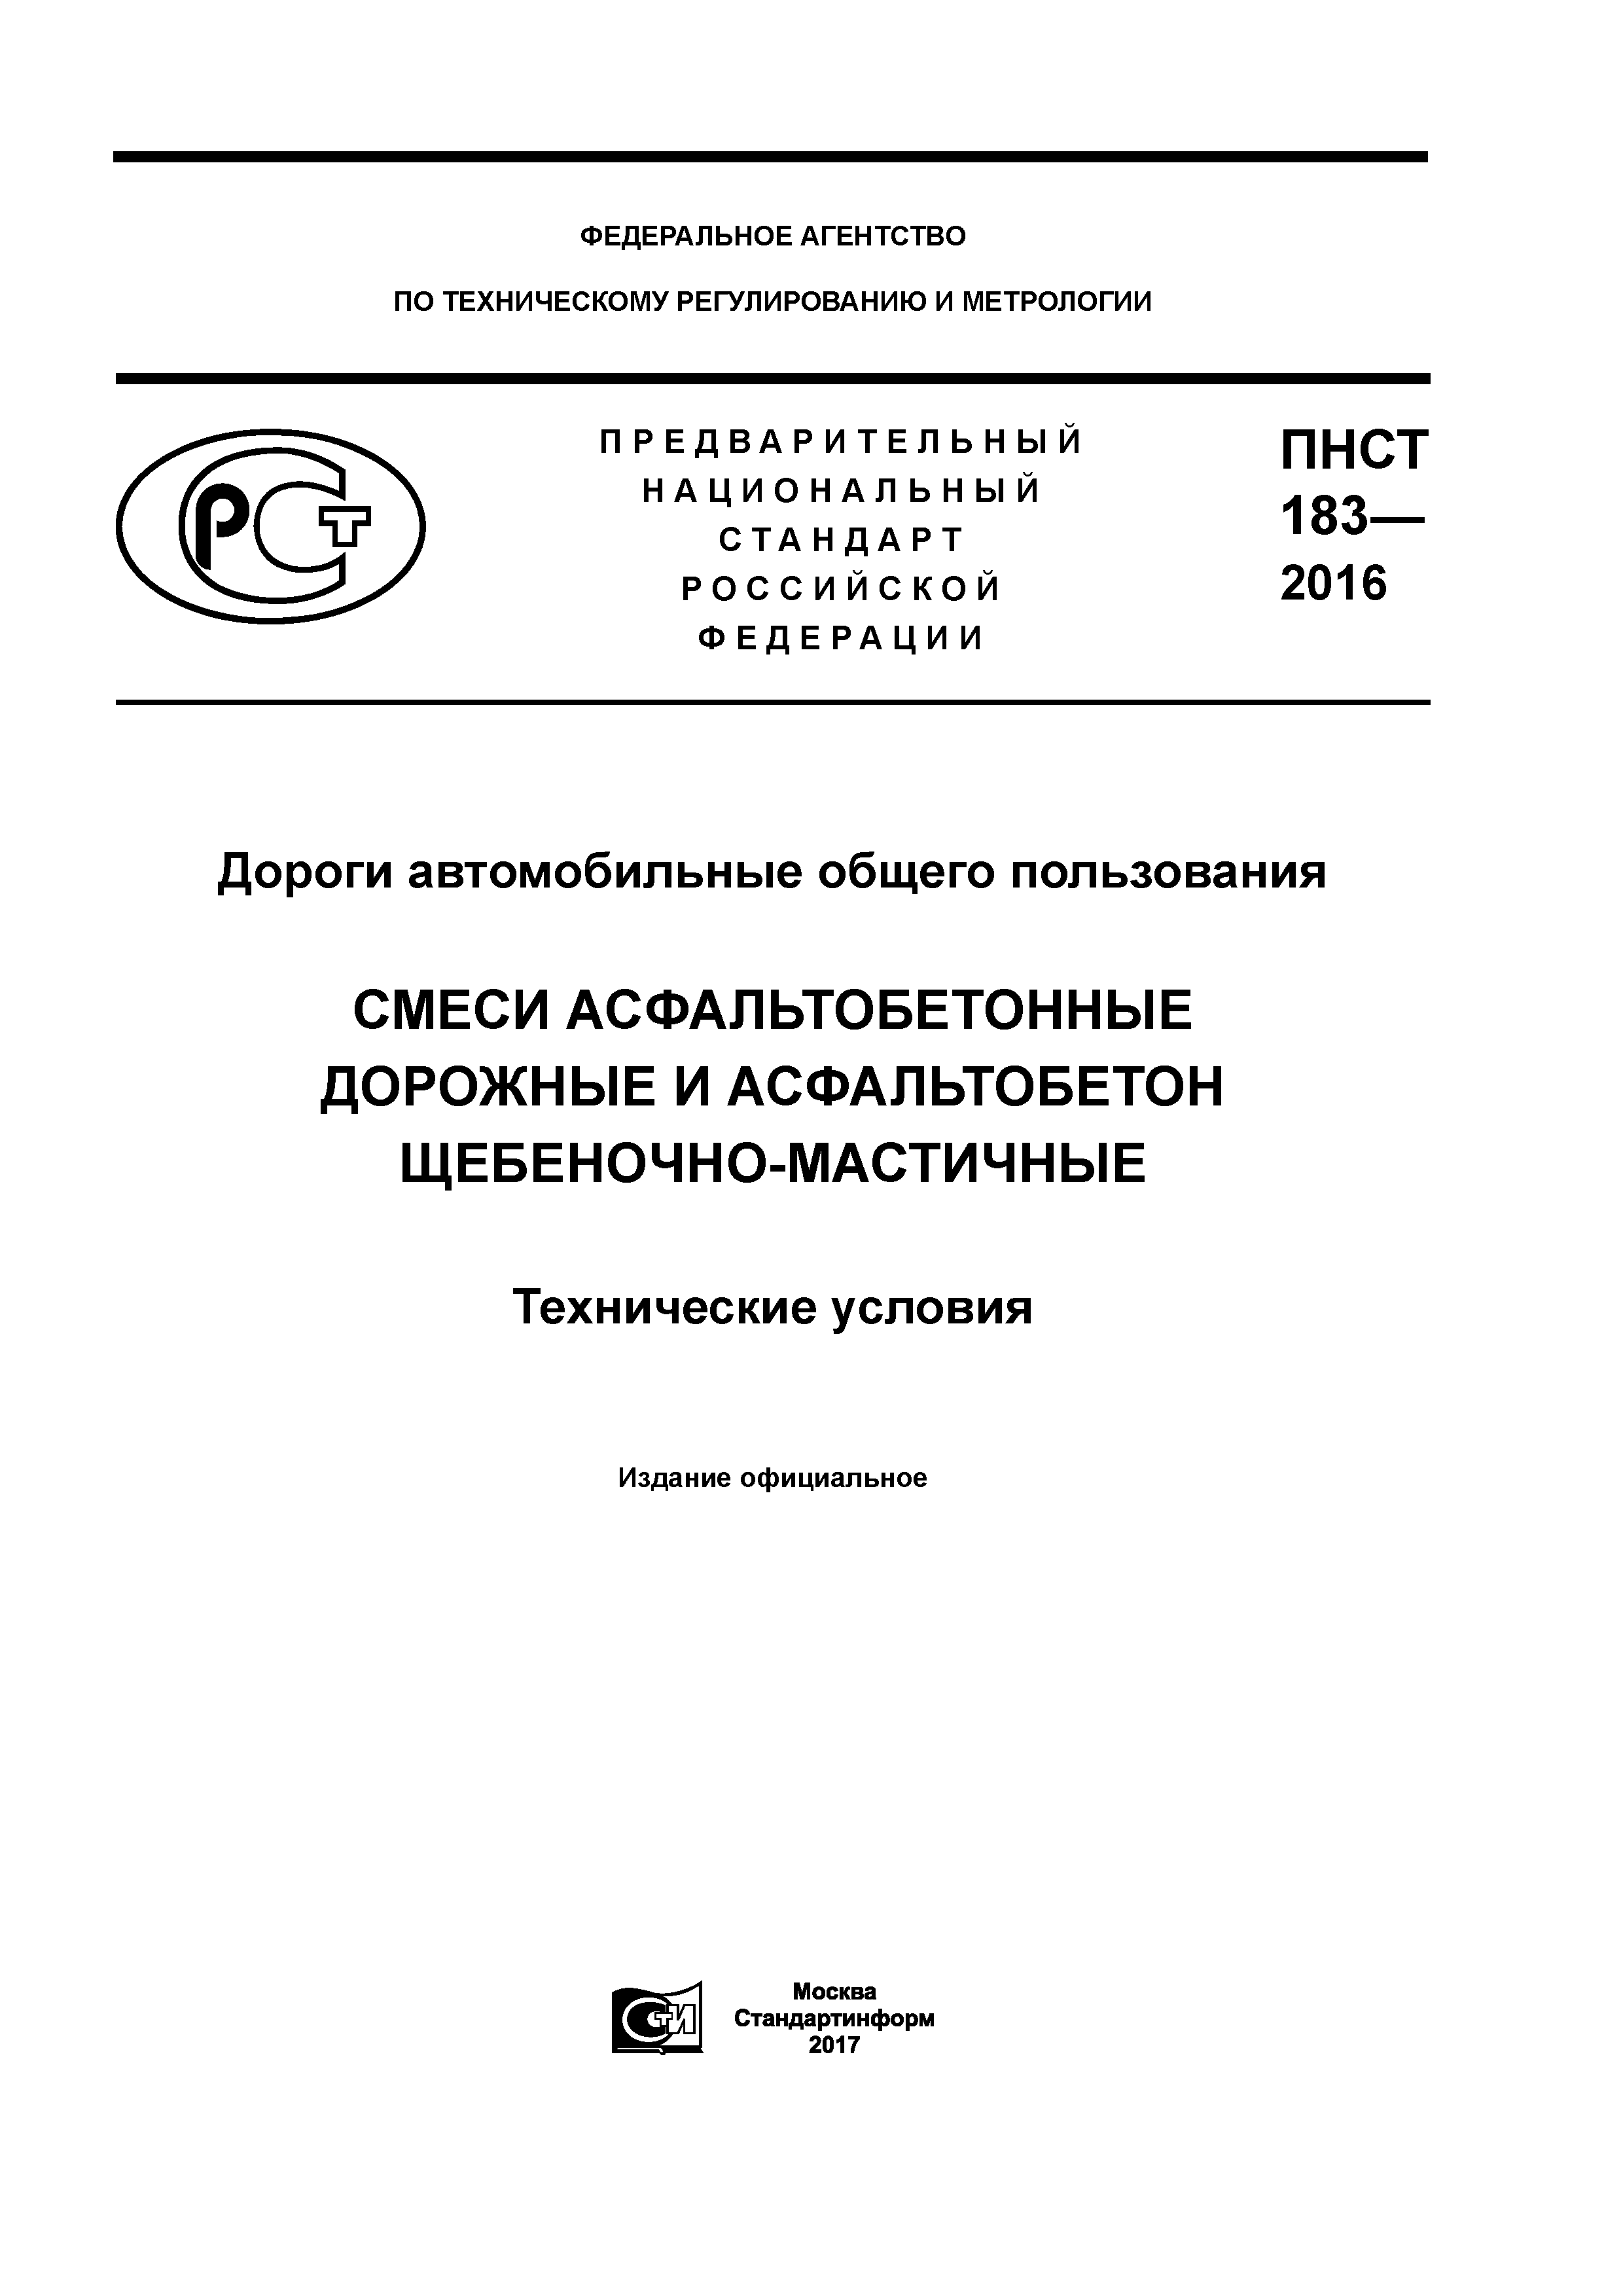 ПНСТ 183-2016